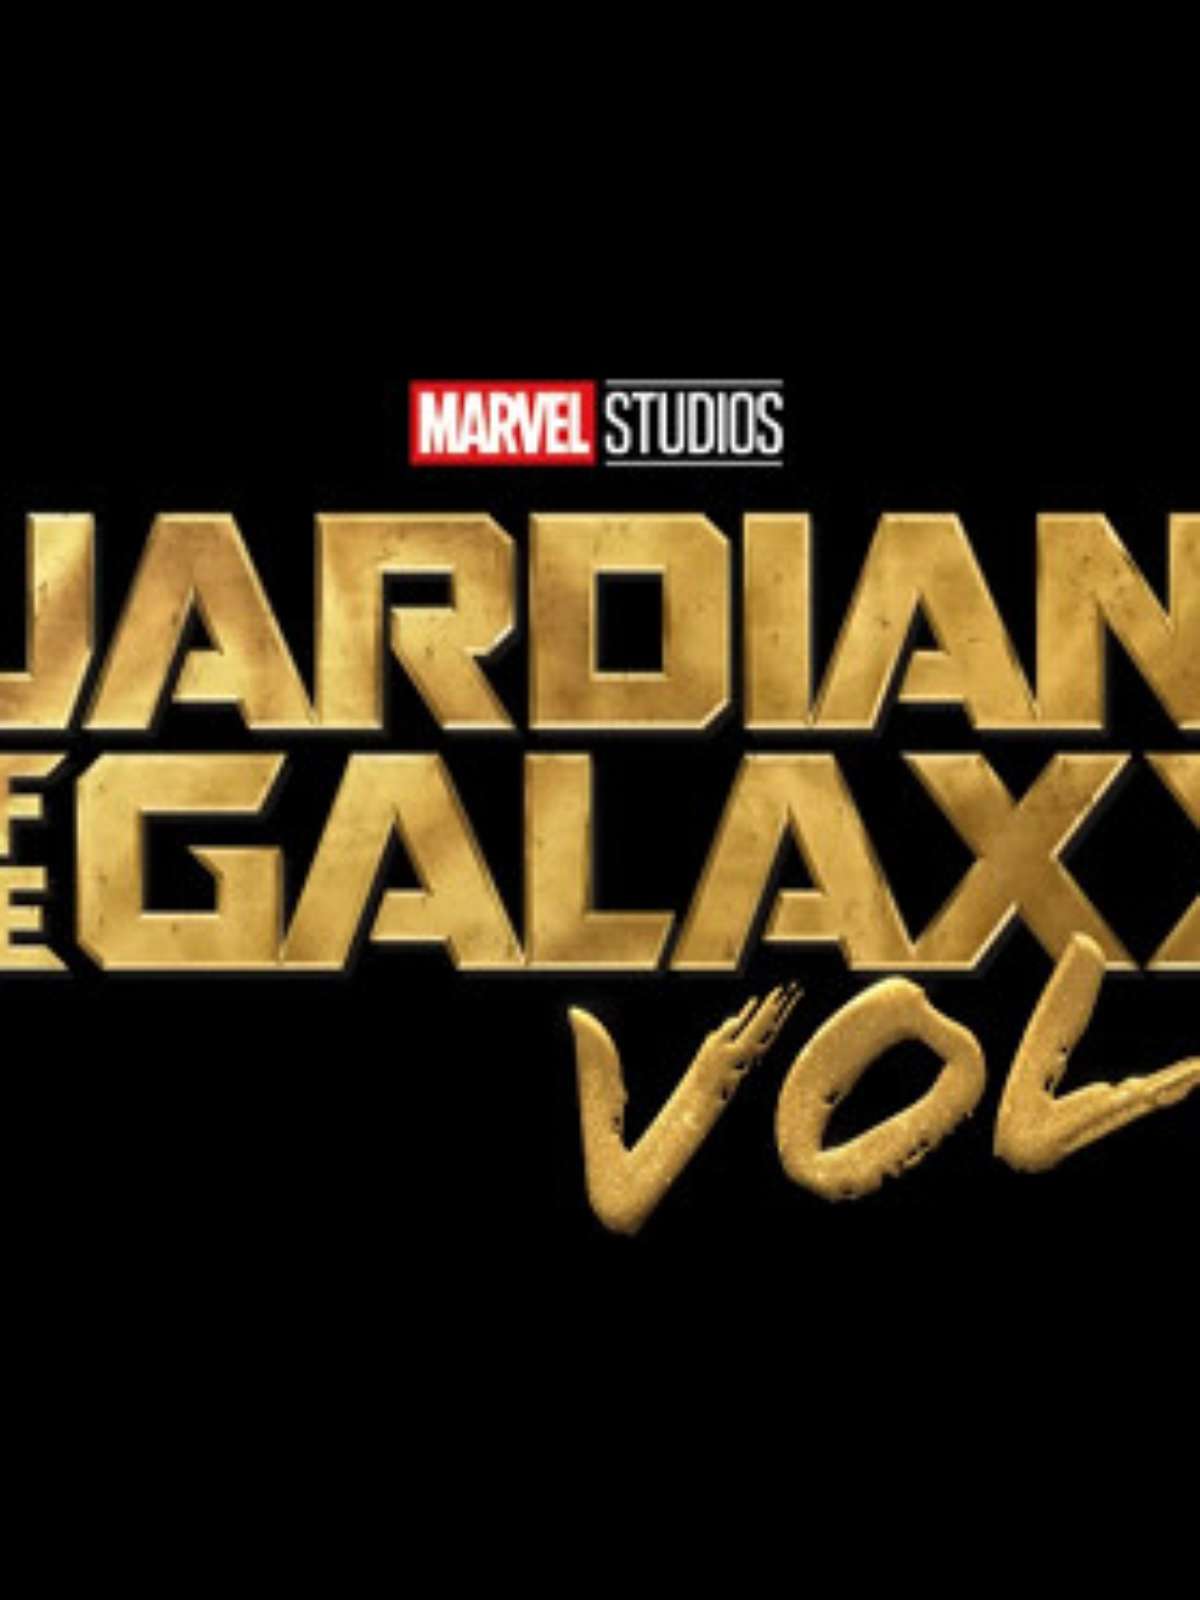 Guardiões da Galáxia Vol. 3 já tem data de estreia no streaming; confira